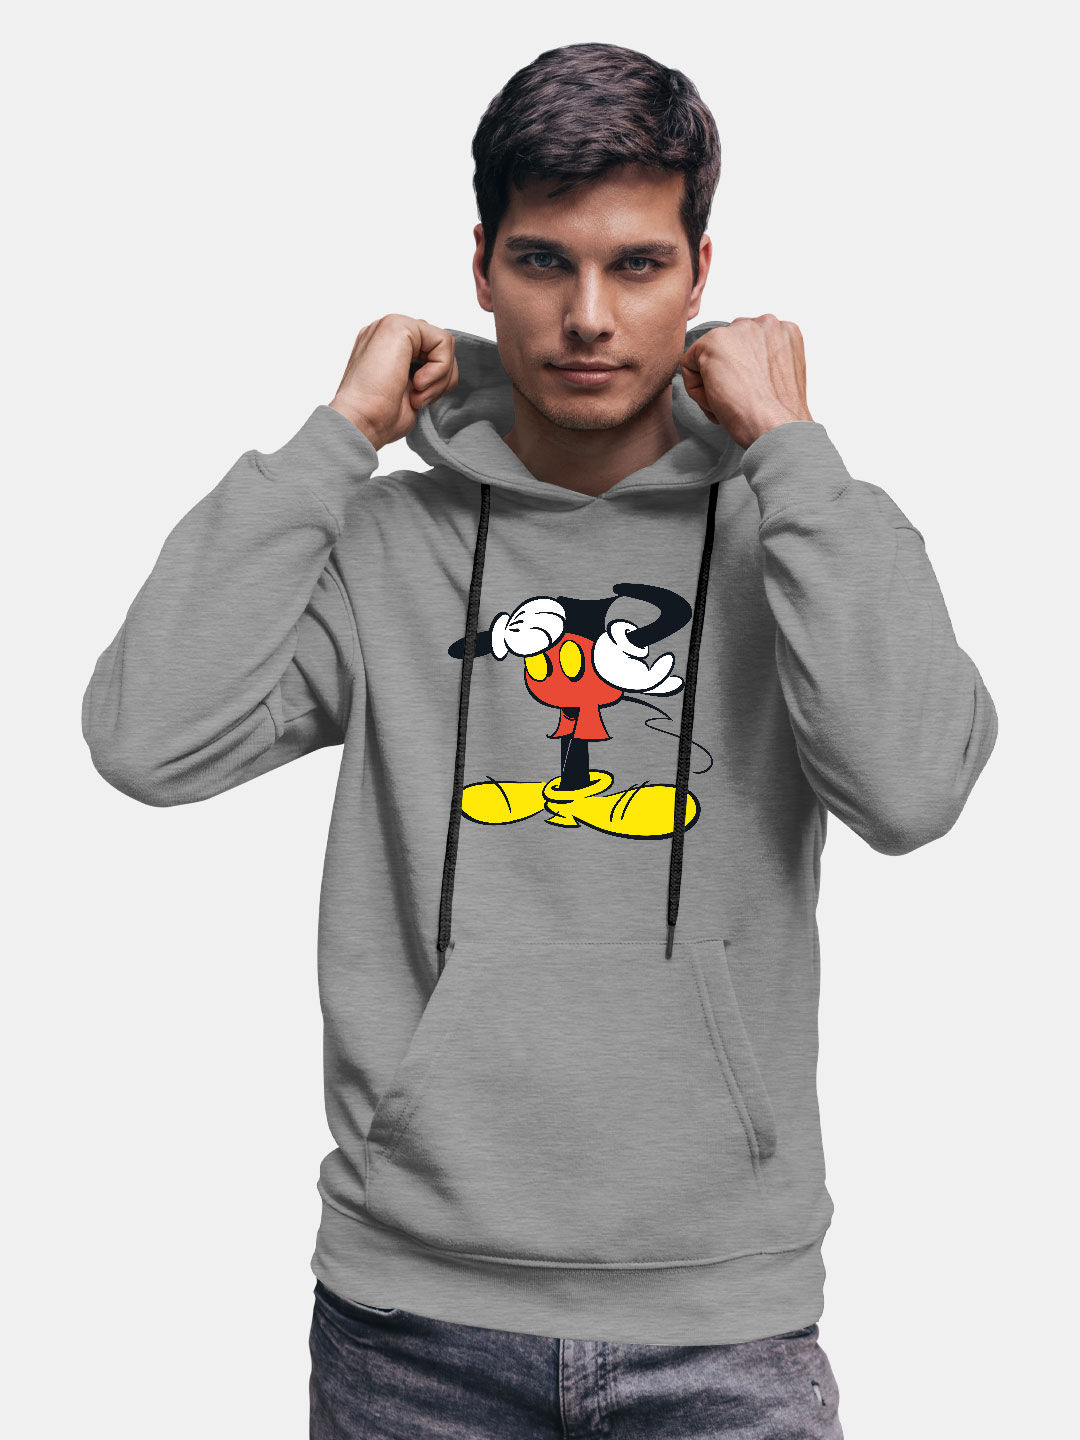 Buy Mickey Body - Male Hoodie Grey Hoodies Online